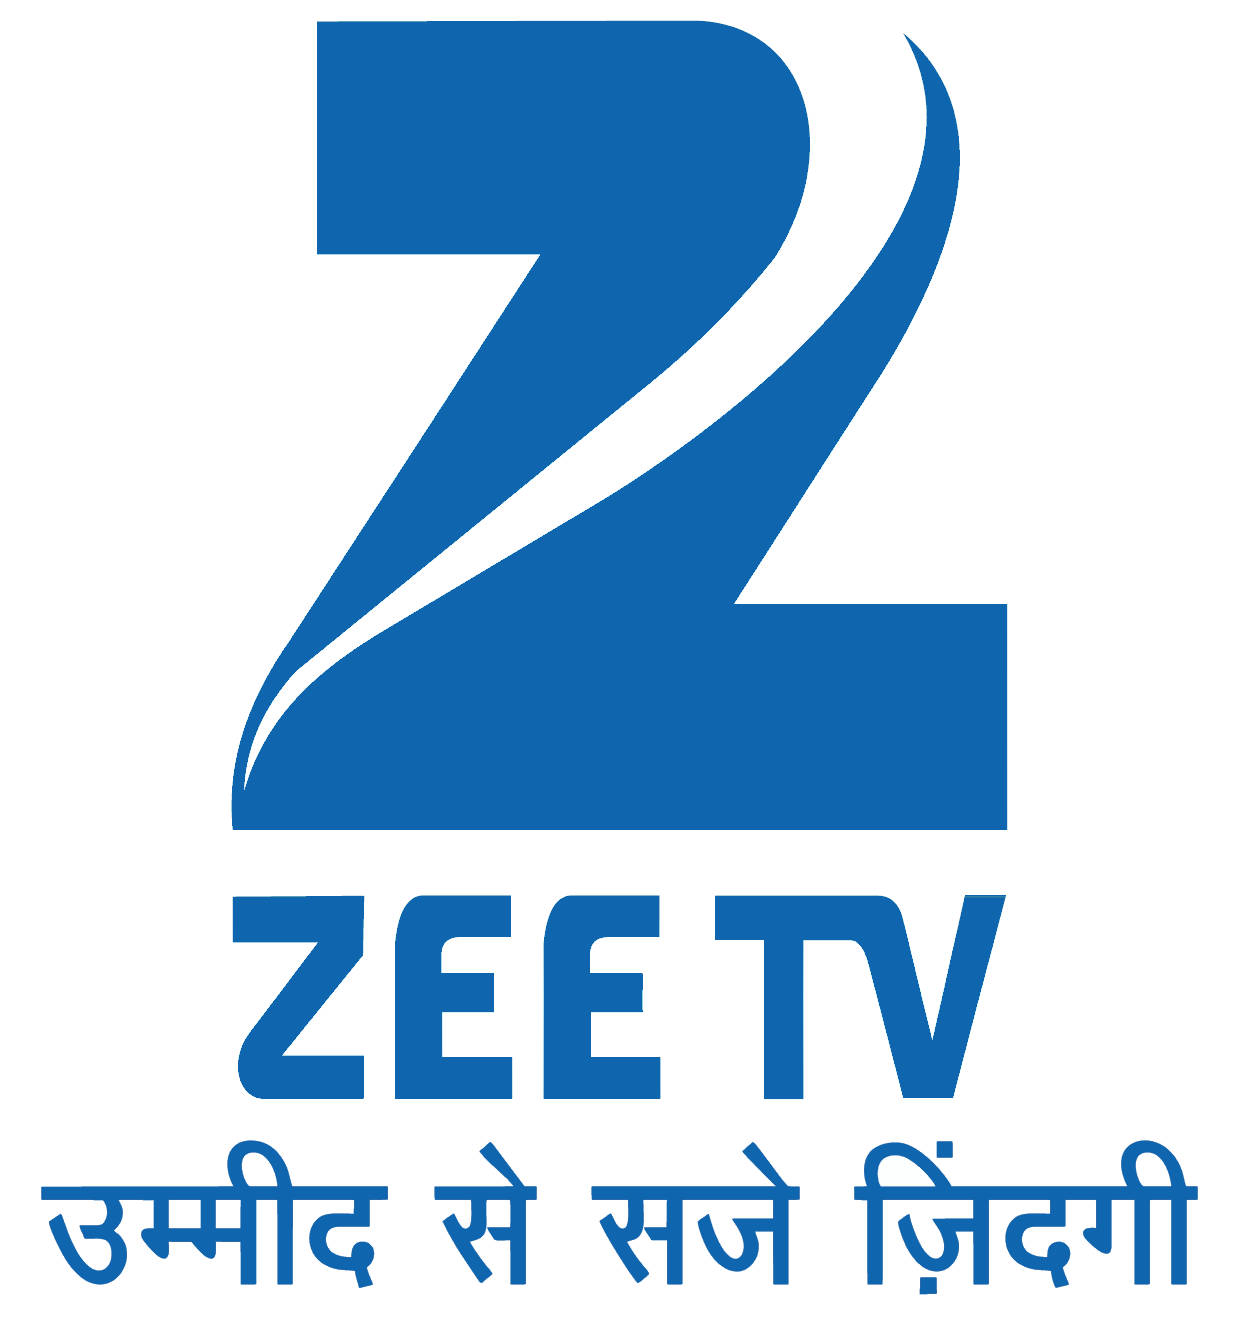 Zee Tv 1234 X 1318 Wallpaper